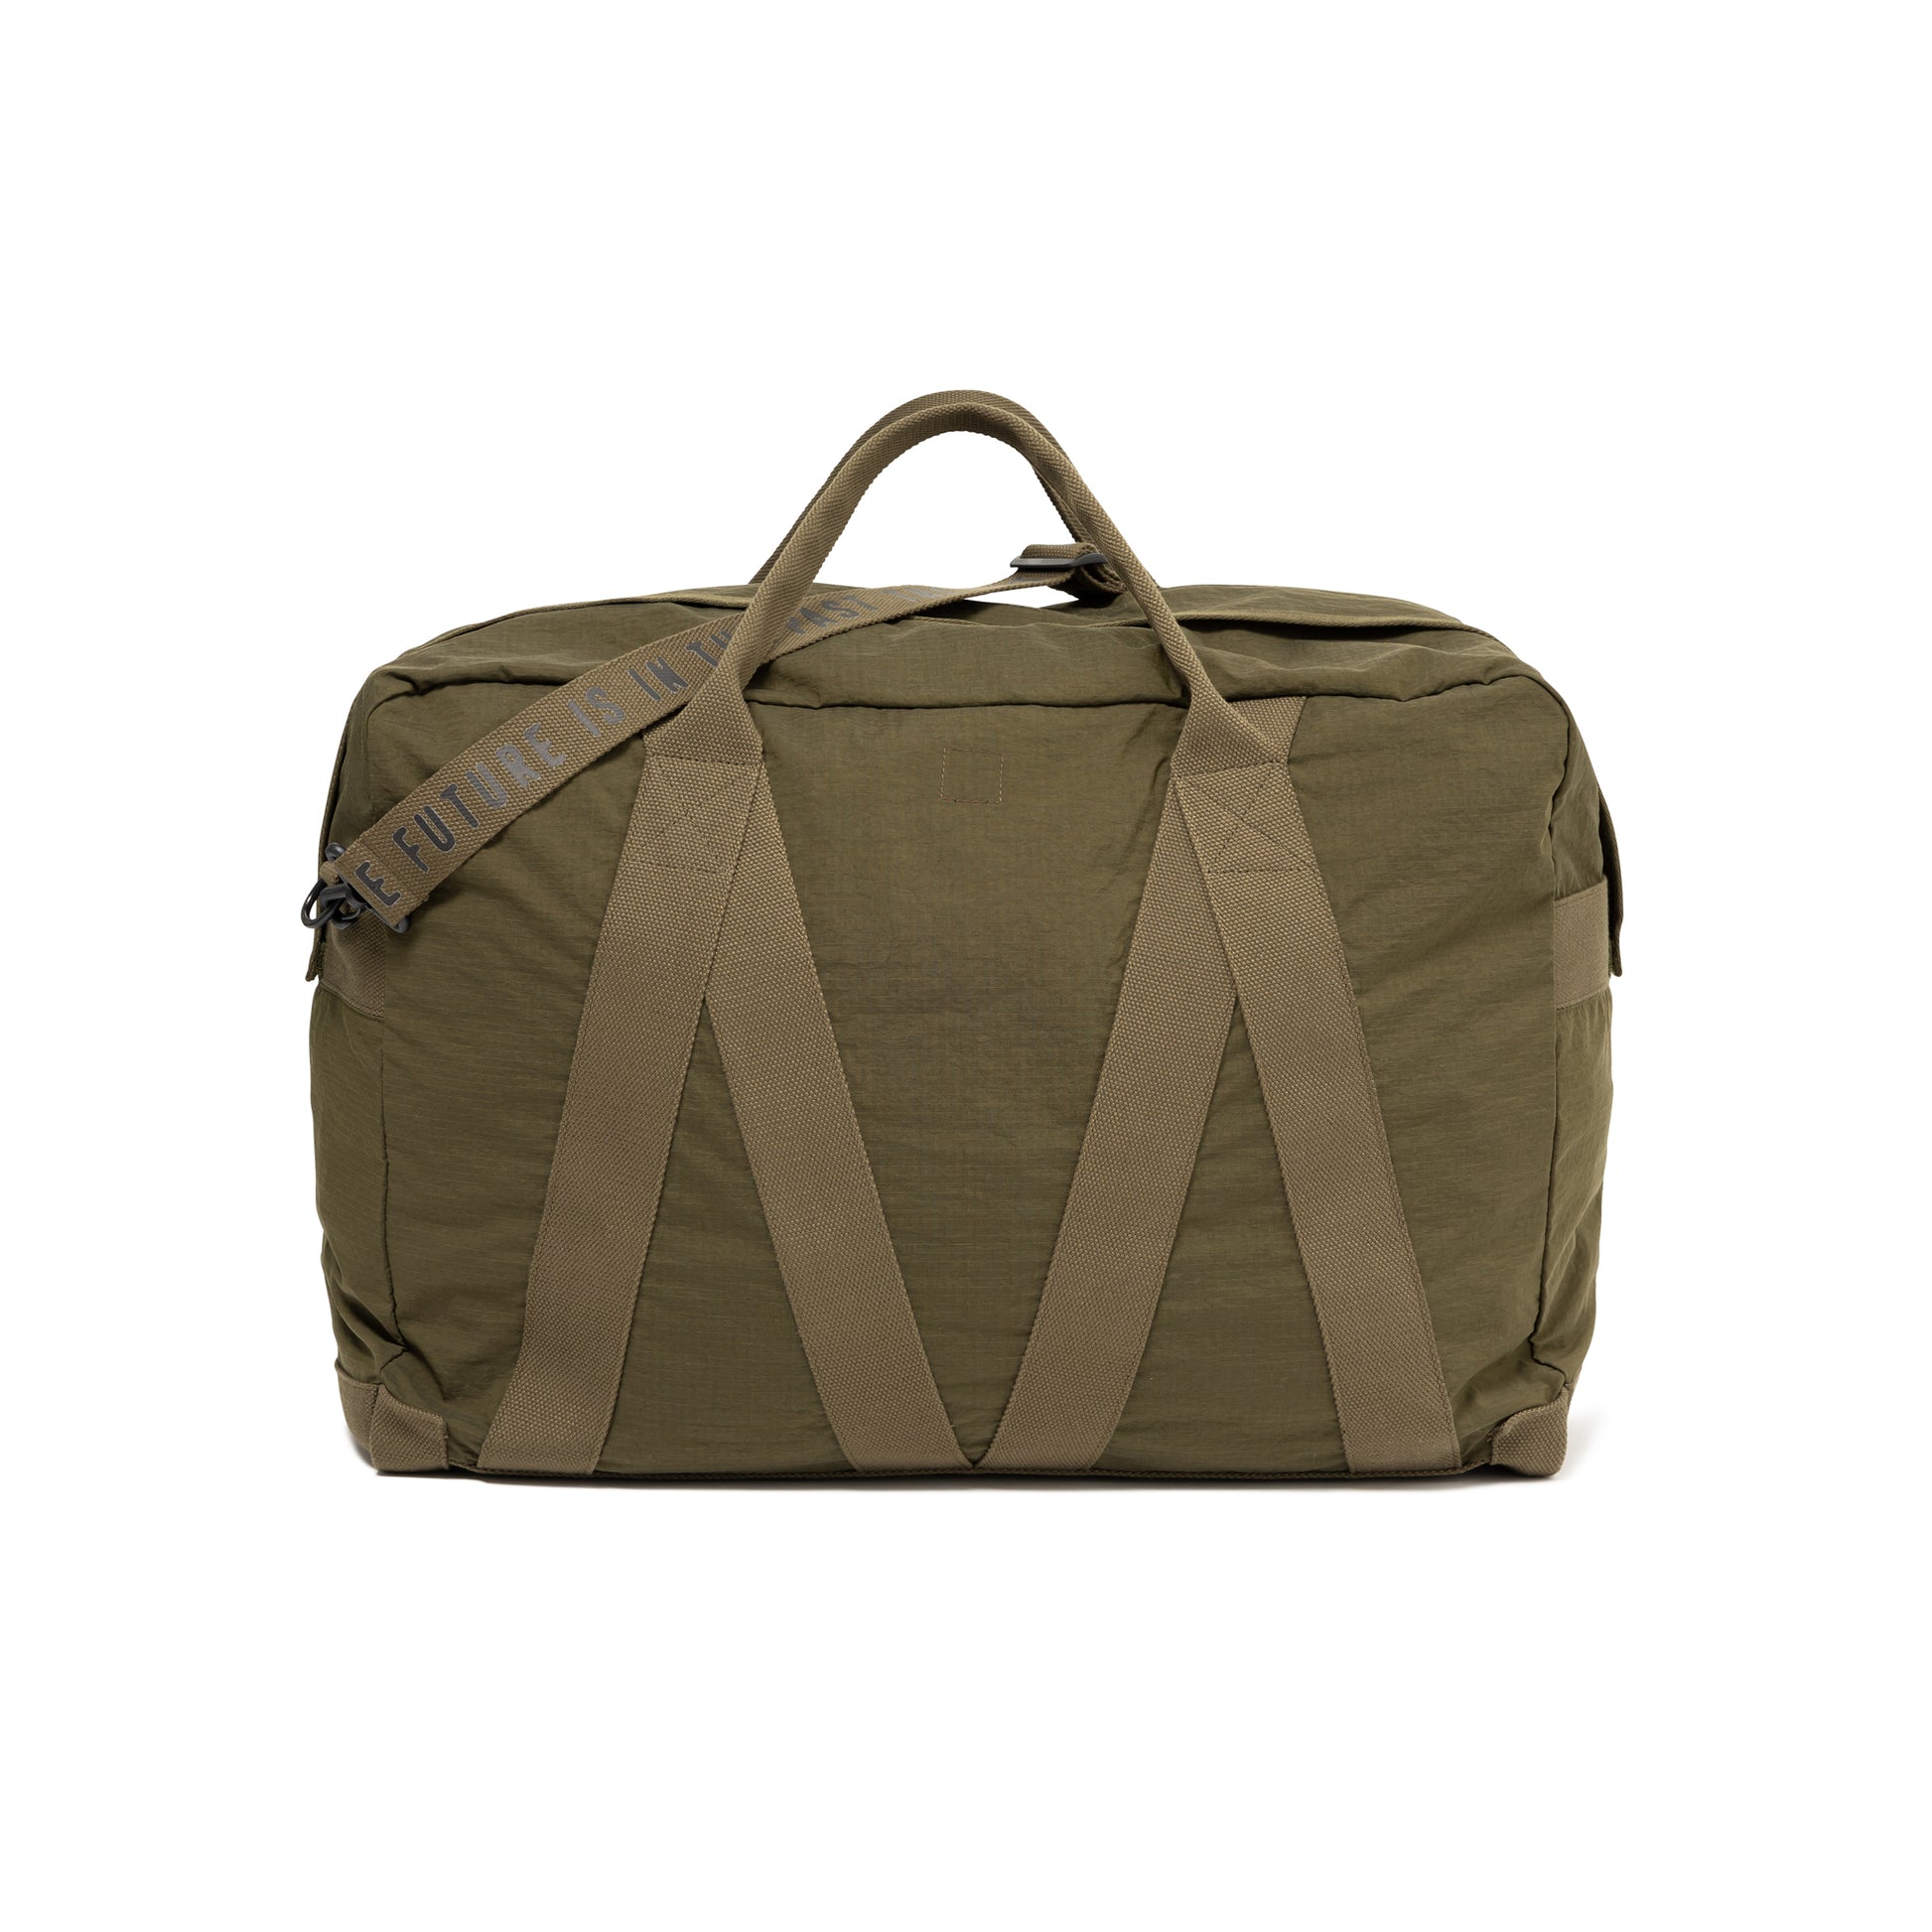 即発送HUMAN MADE Military Carry Bagよろしくお願いいたします